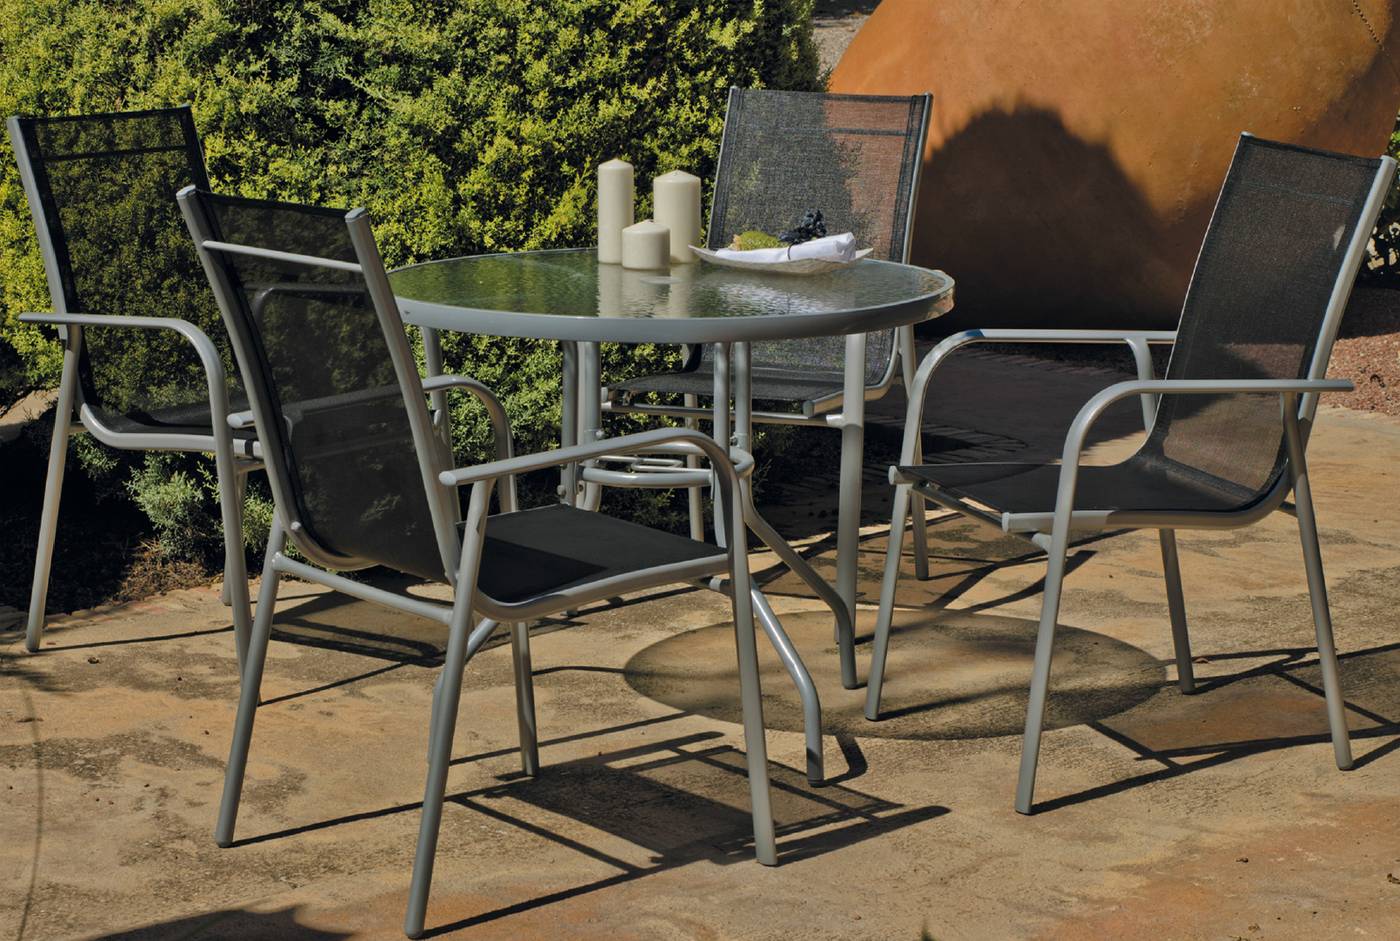 Conjunto de aluminio color plata: mesa redonda con tablero cristal templado + 4 sillones de aluminio y textilen